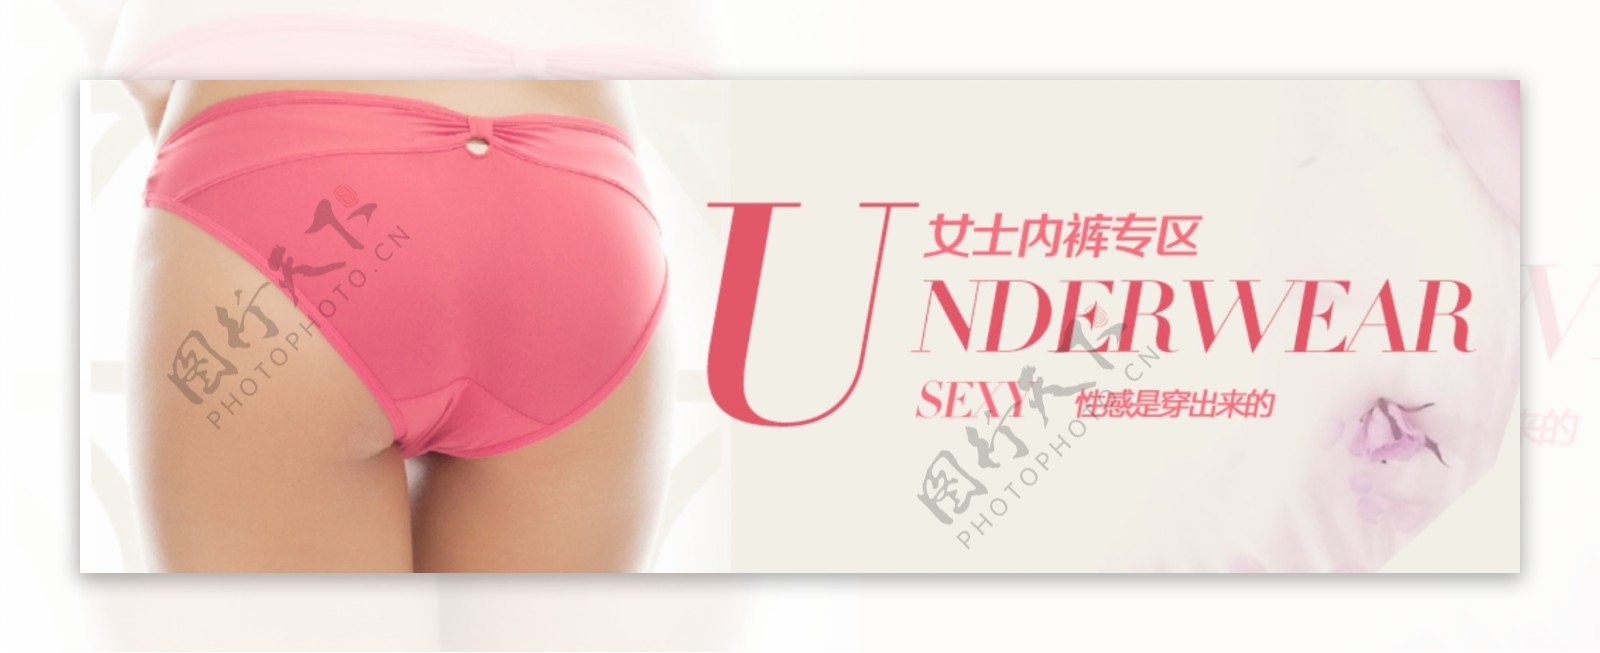 粉红内裤广告图片